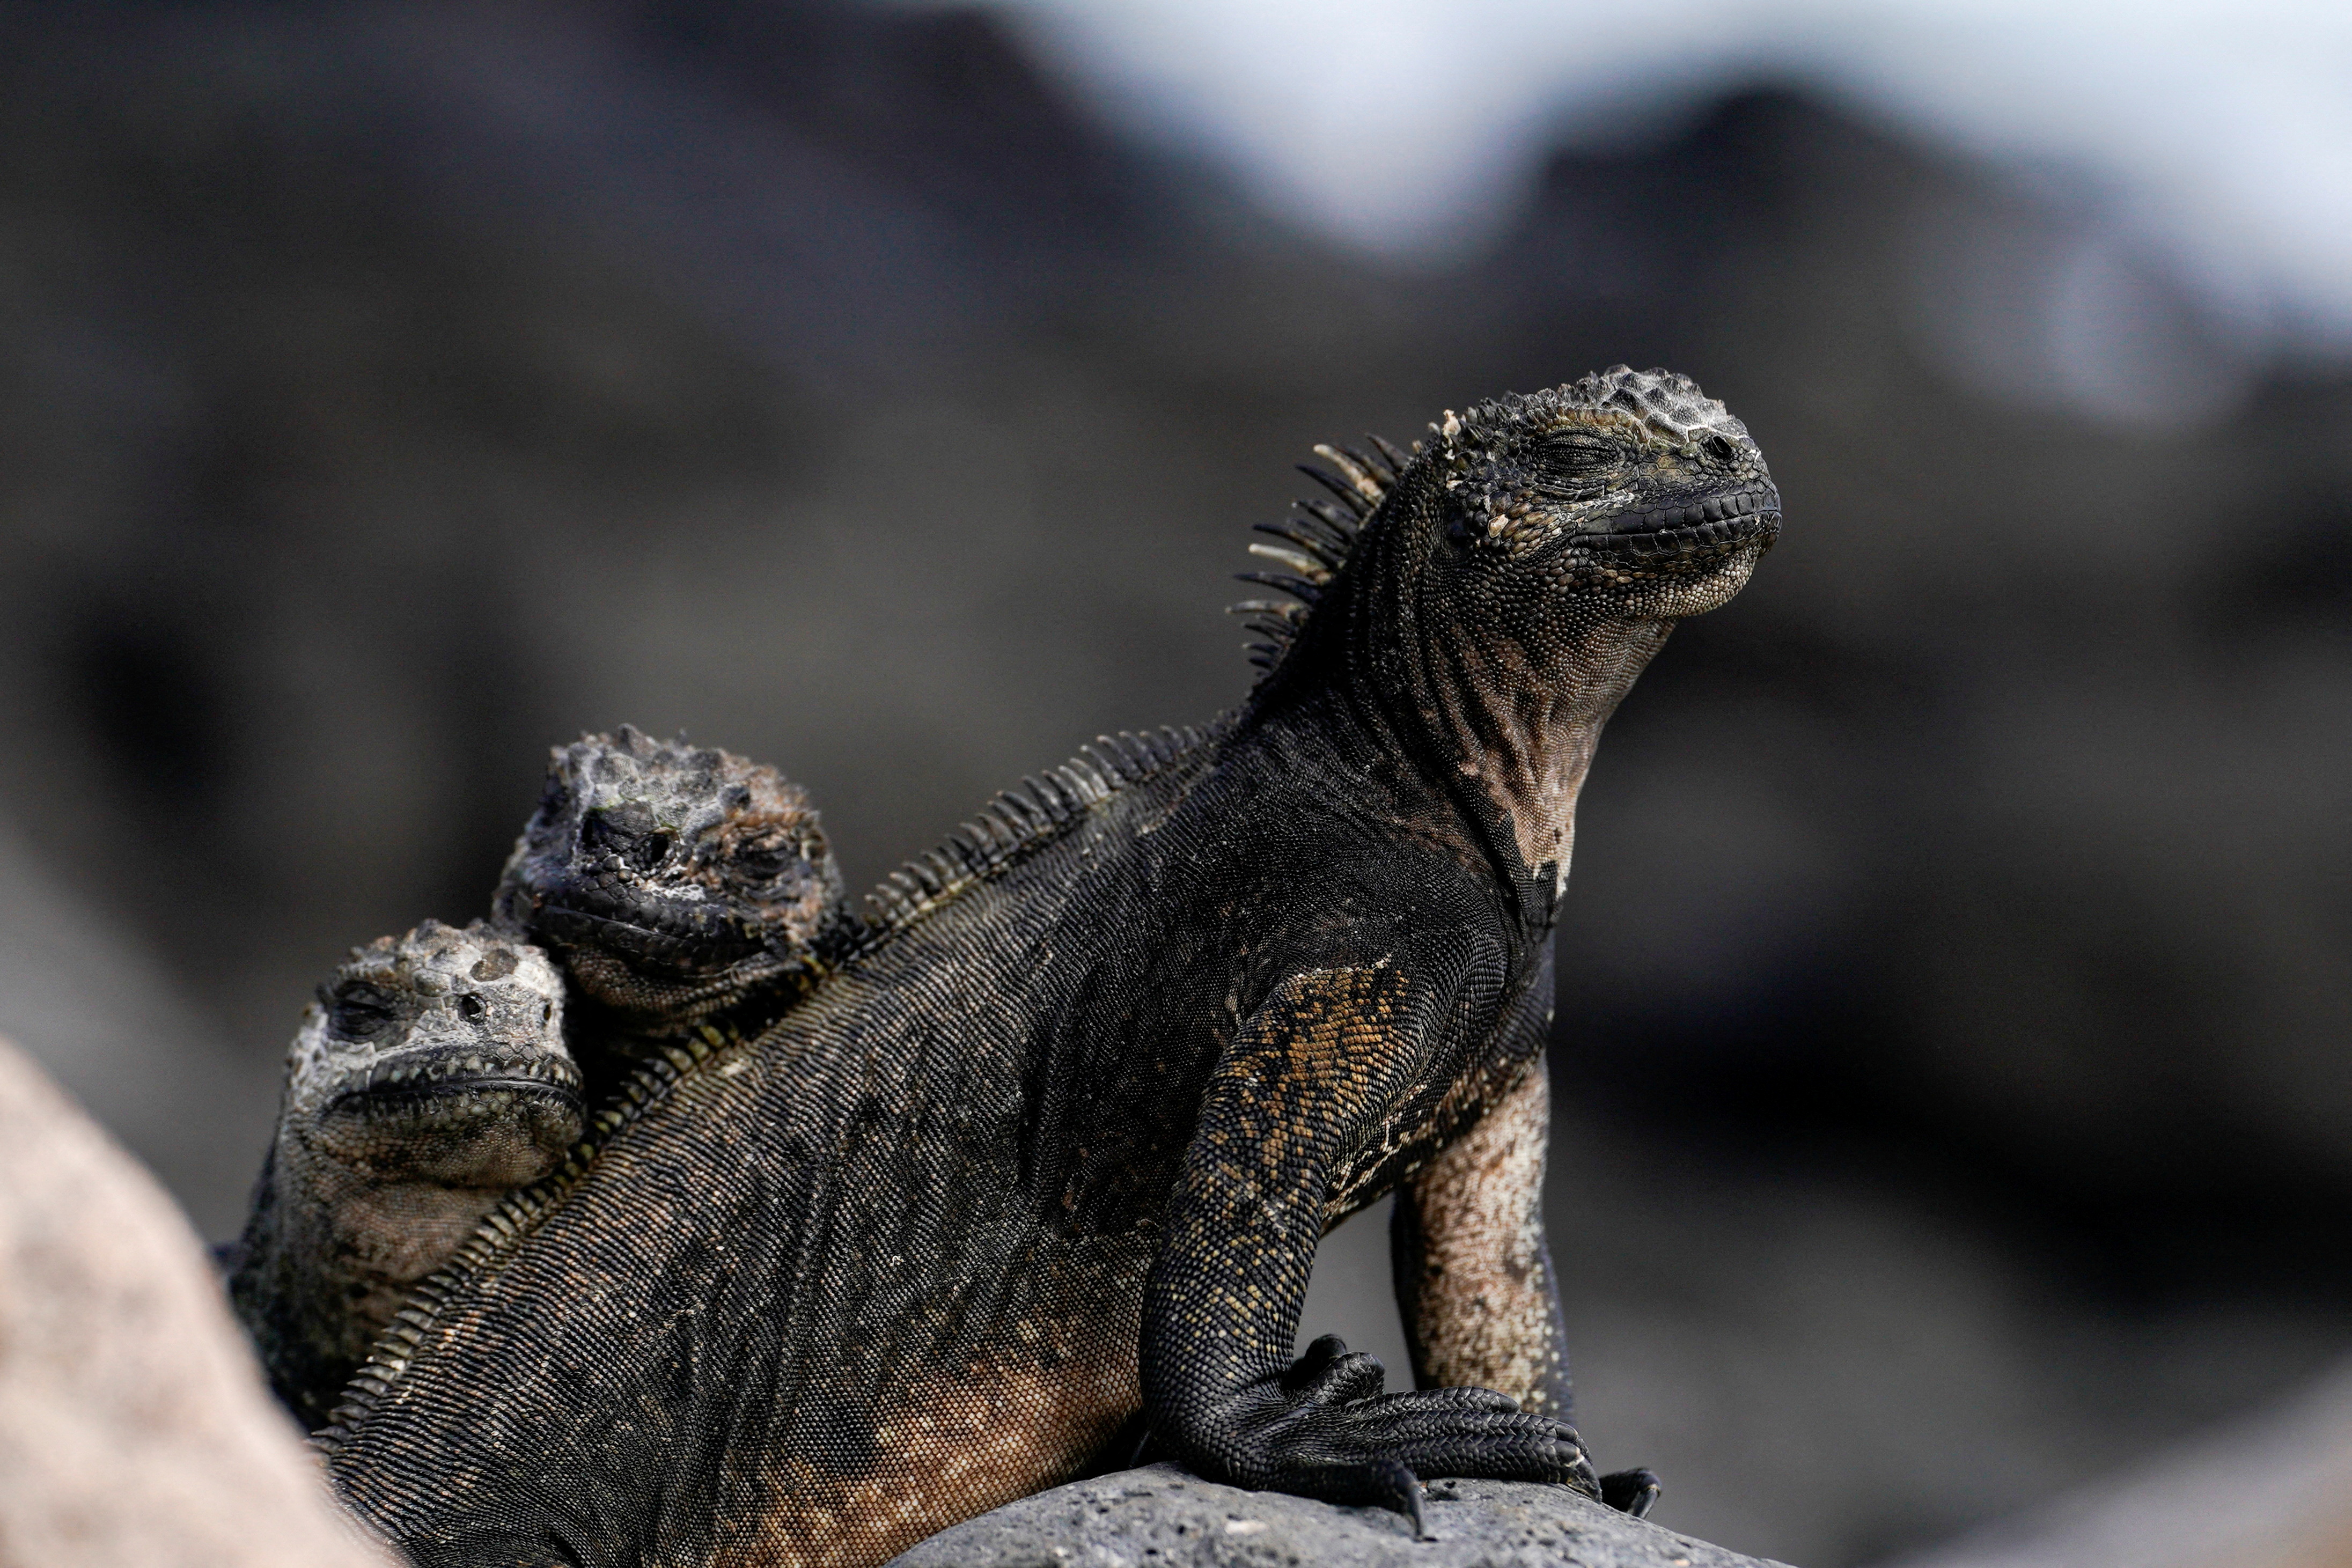 Ecuador expands protected marine area around Galapagos Islands